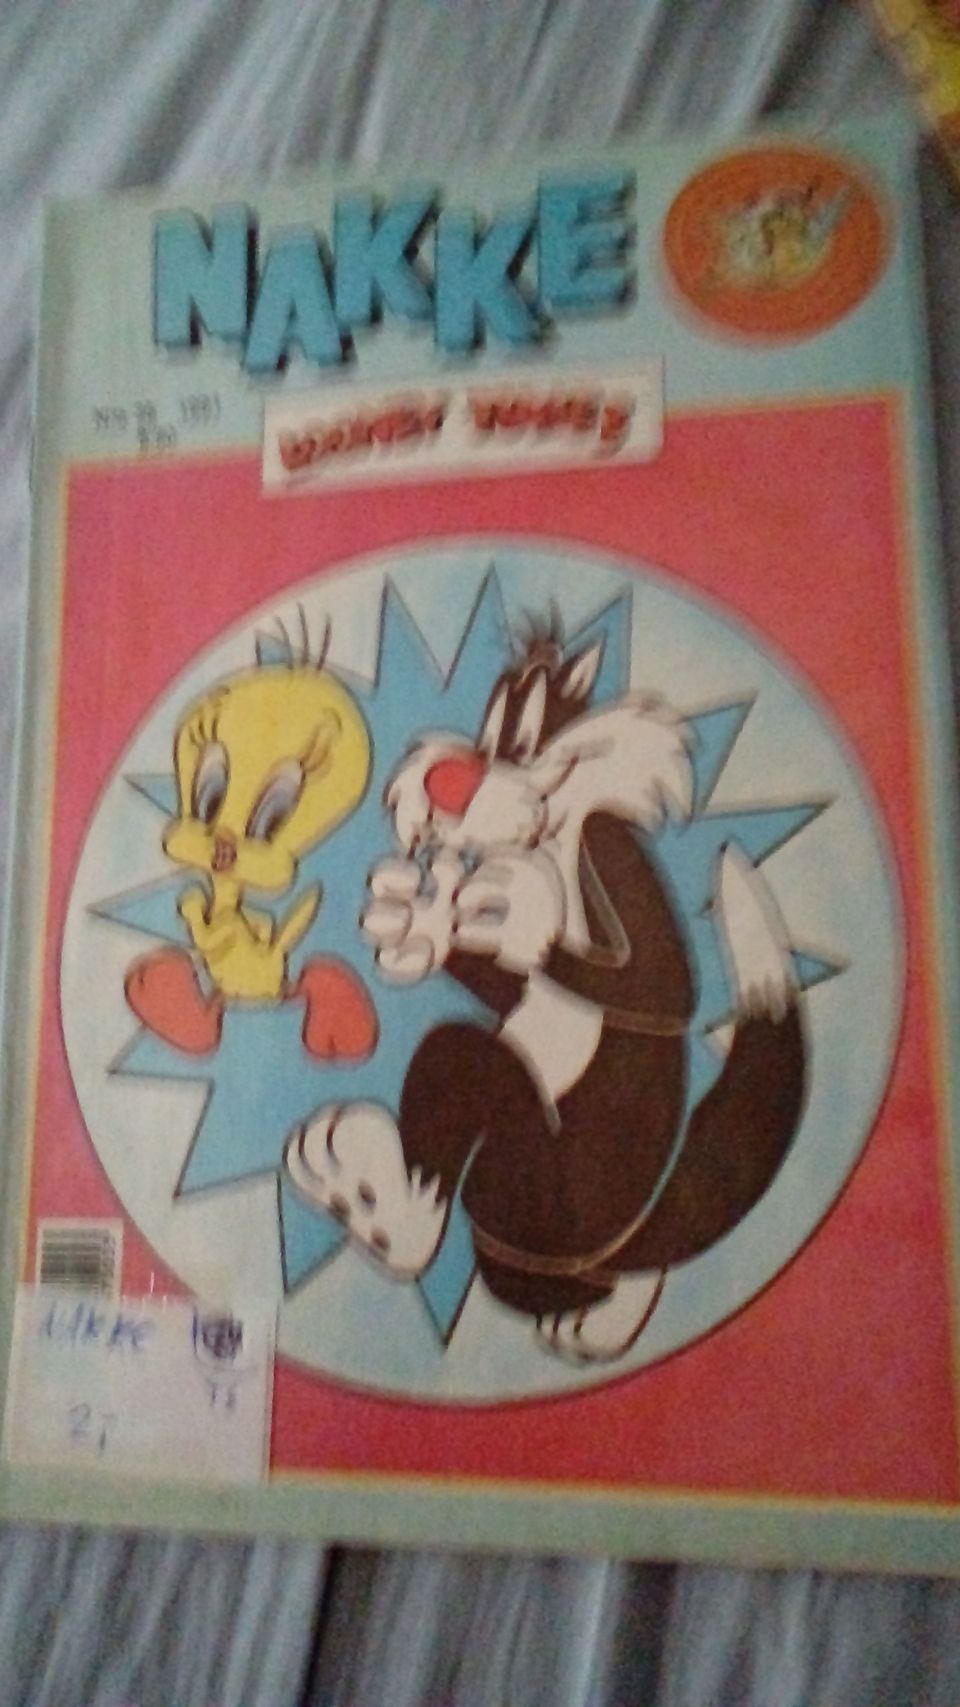 Nakke sarjakuvalehti 1991